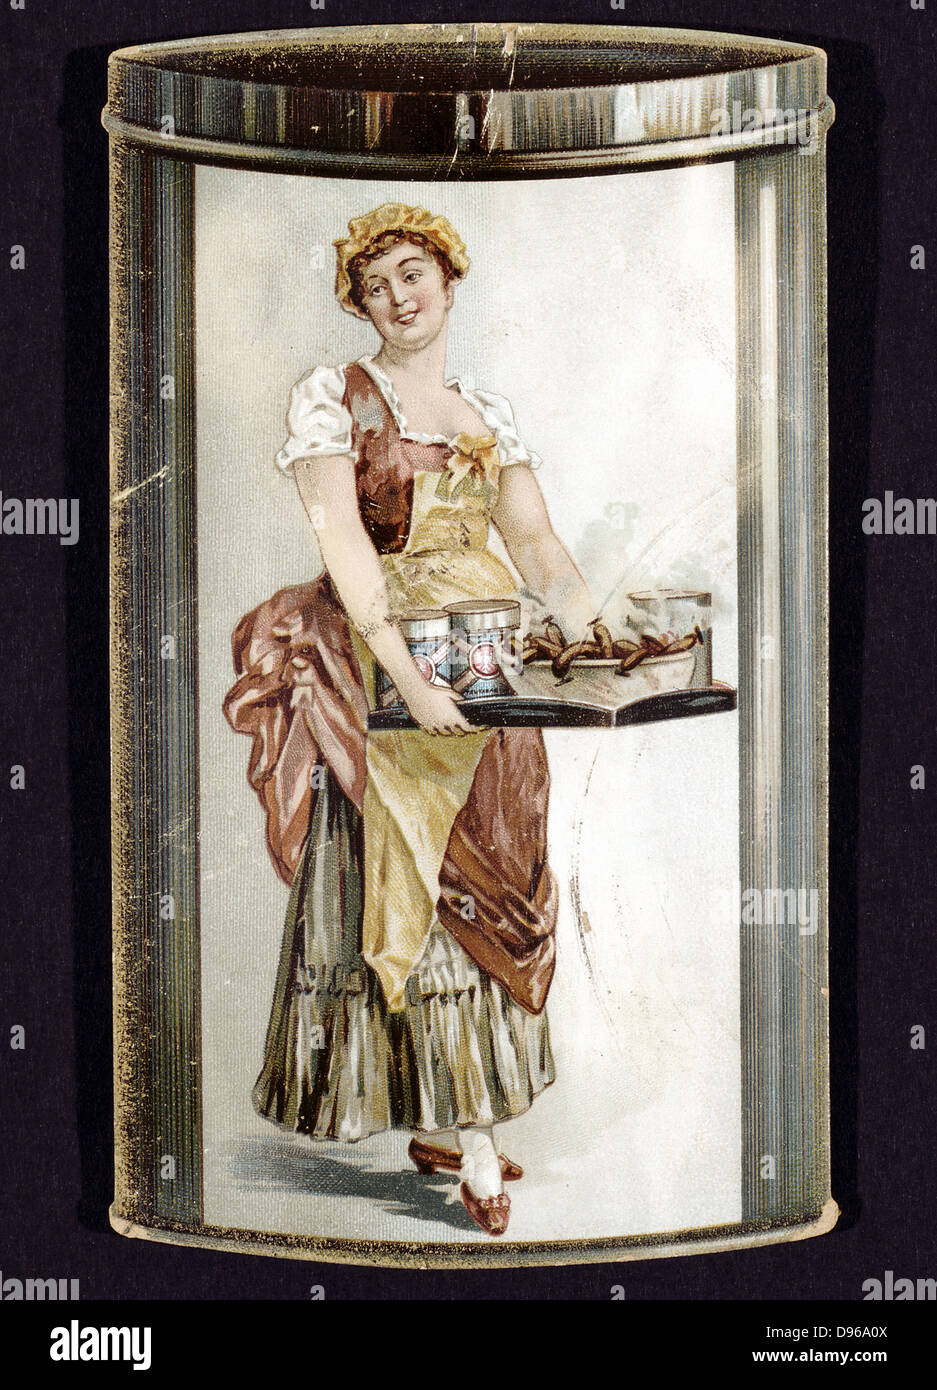 Umkehren des Handels Karte für Frankfurter Würstchen aus der Dose von Heinrich Bauer in Frankfurt am Main produziert. c 1895, lächelnde Mädchen mit Fach dampfender Würstchen. Stockfoto